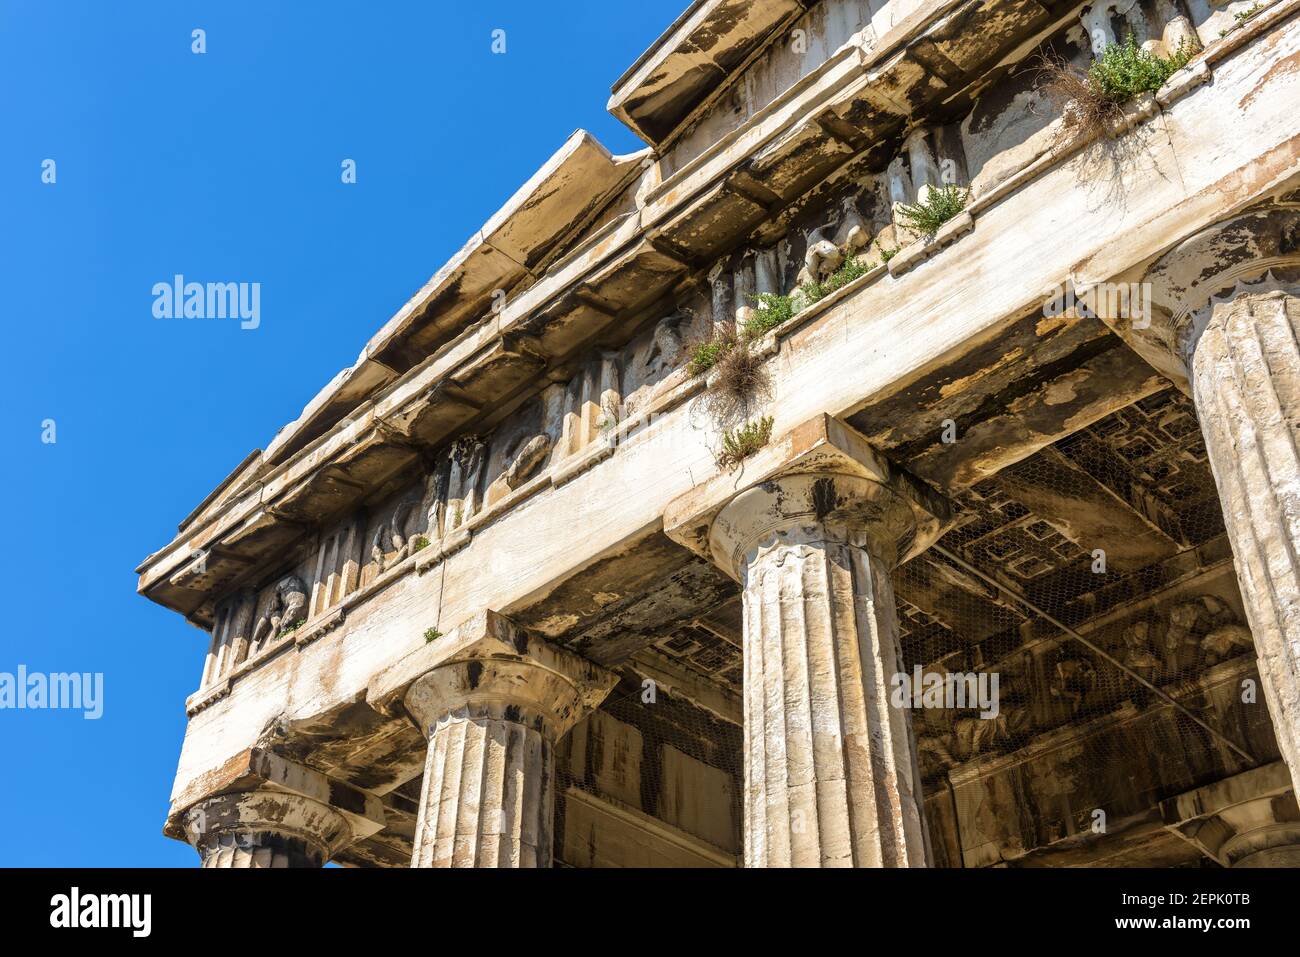 Tempio di Efesto ad Agora, Atene, Grecia. E' un punto di riferimento di Atene. Particolare di architettura antica, edificio greco antico, monumento classico sul cielo Foto Stock